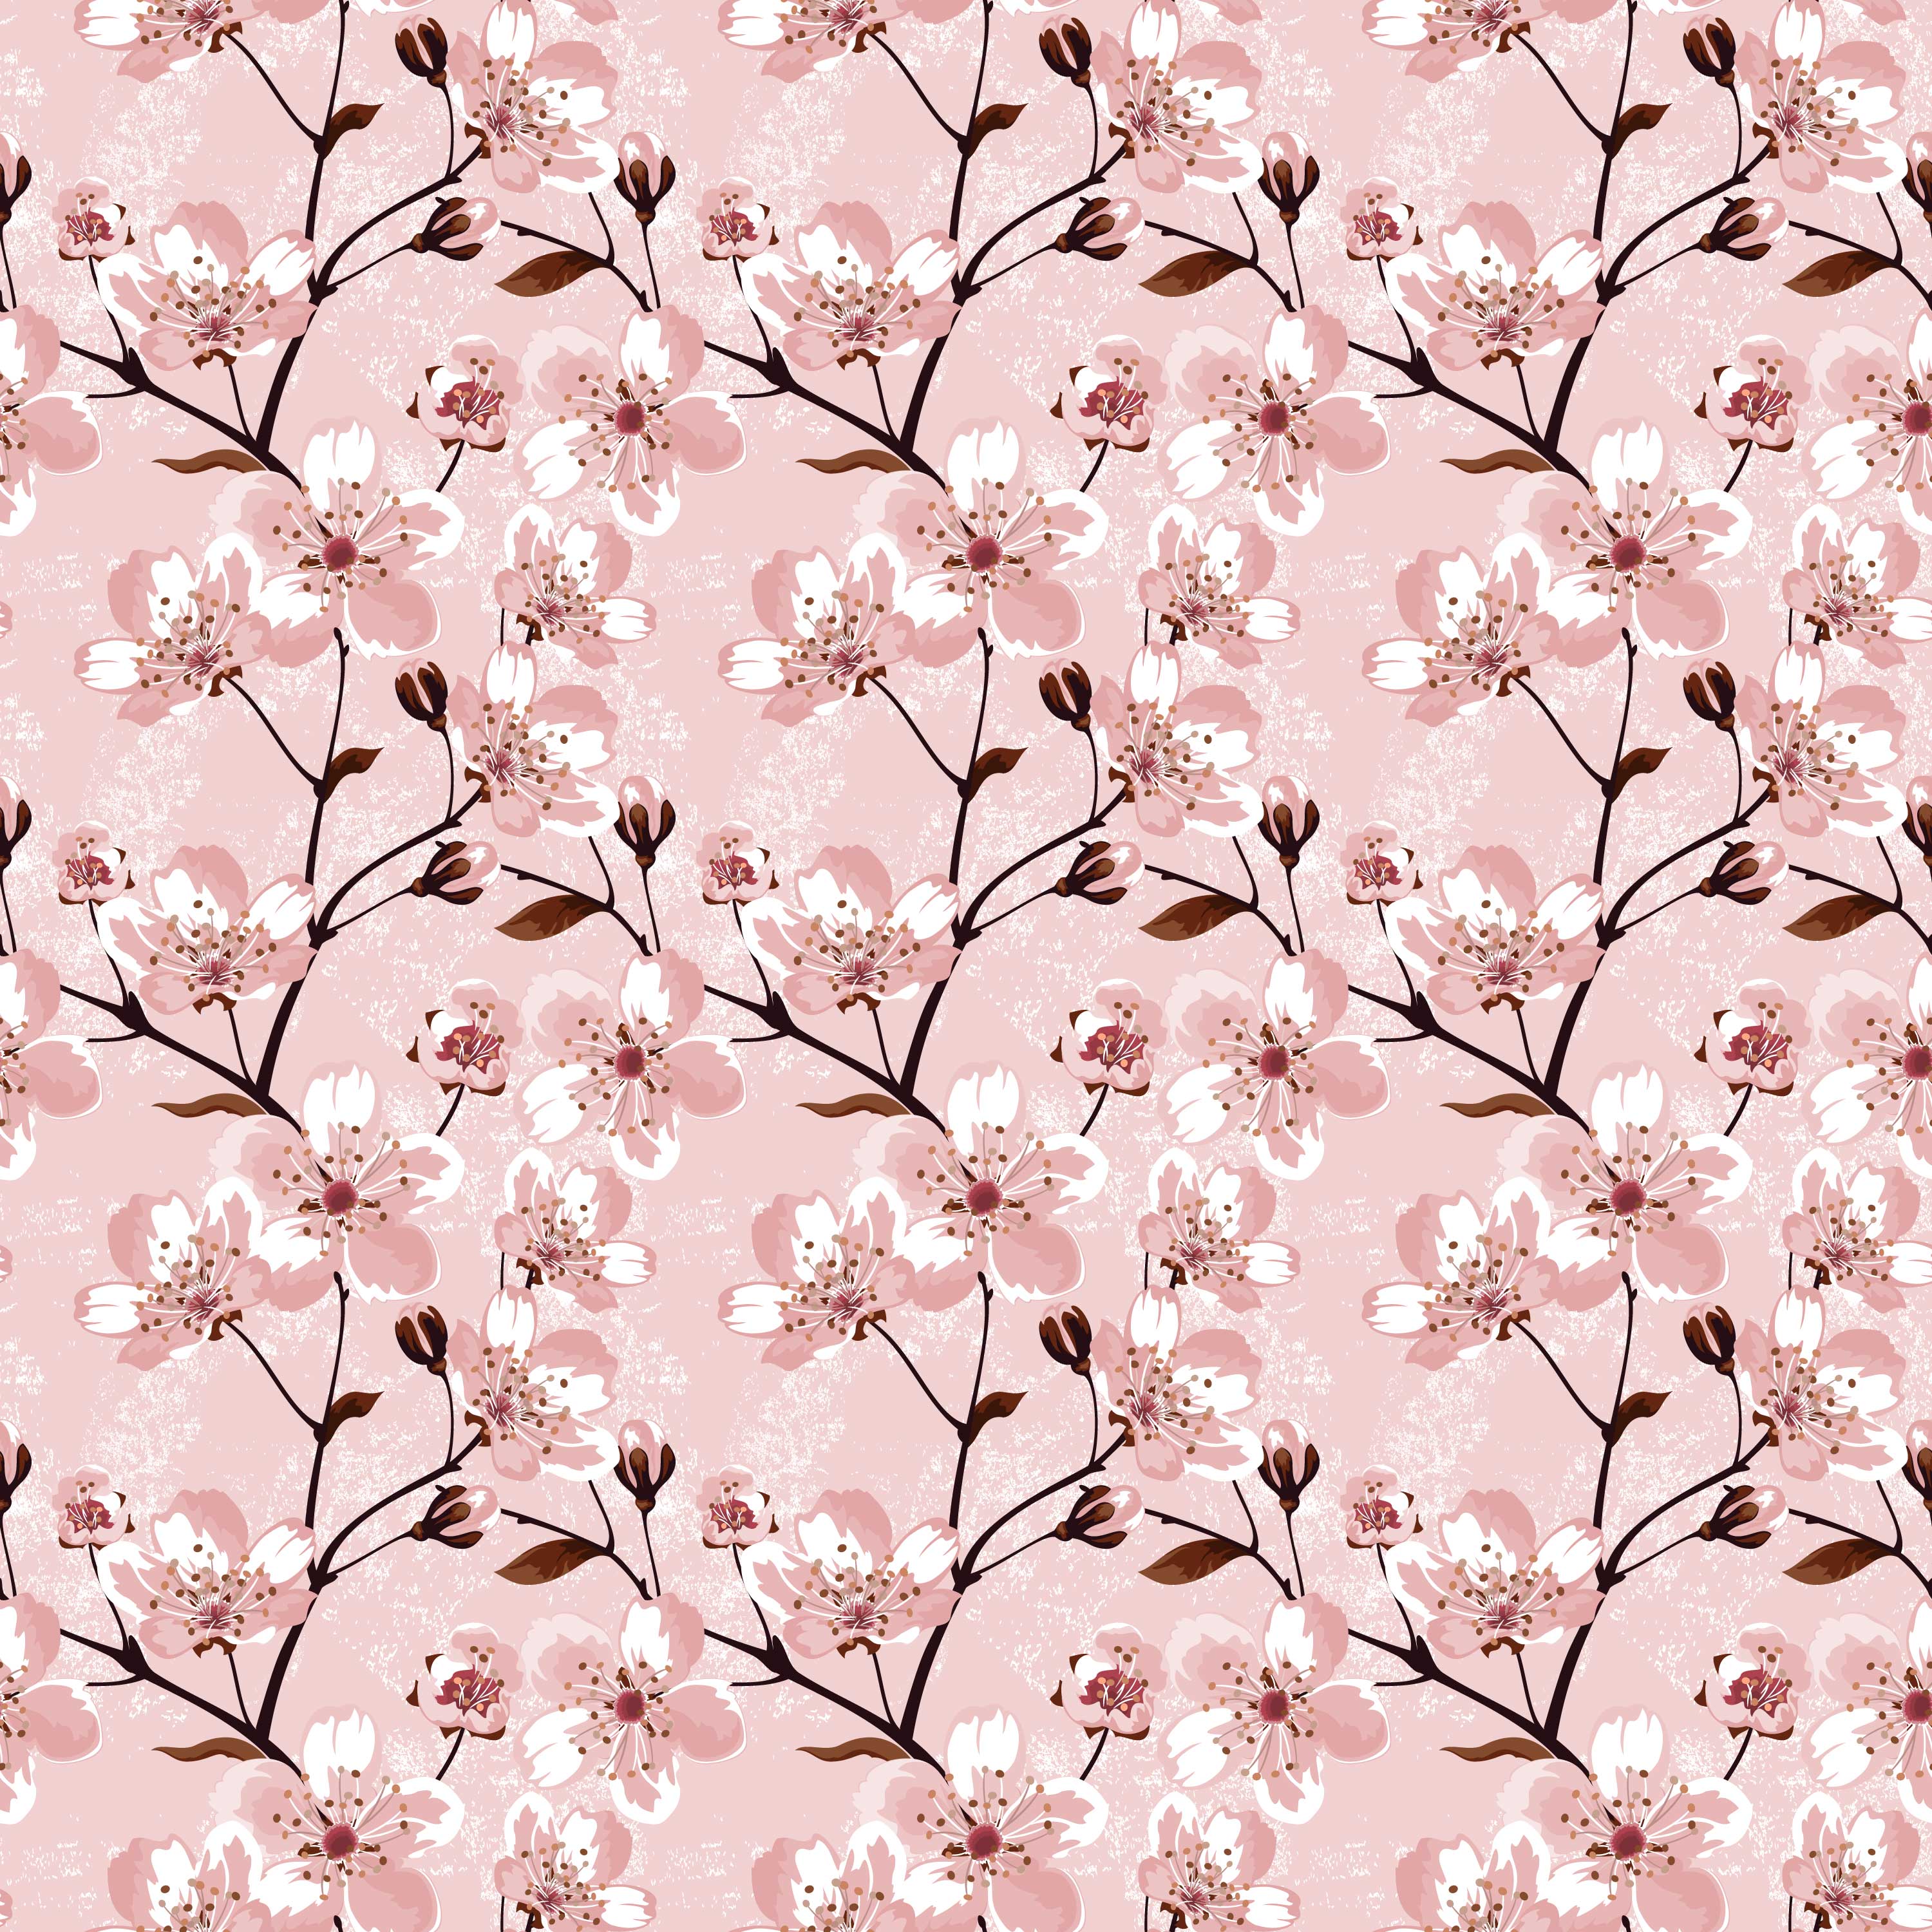 桜 さくら の画像 イラスト フリー素材 No 041 桜壁紙 ピンク